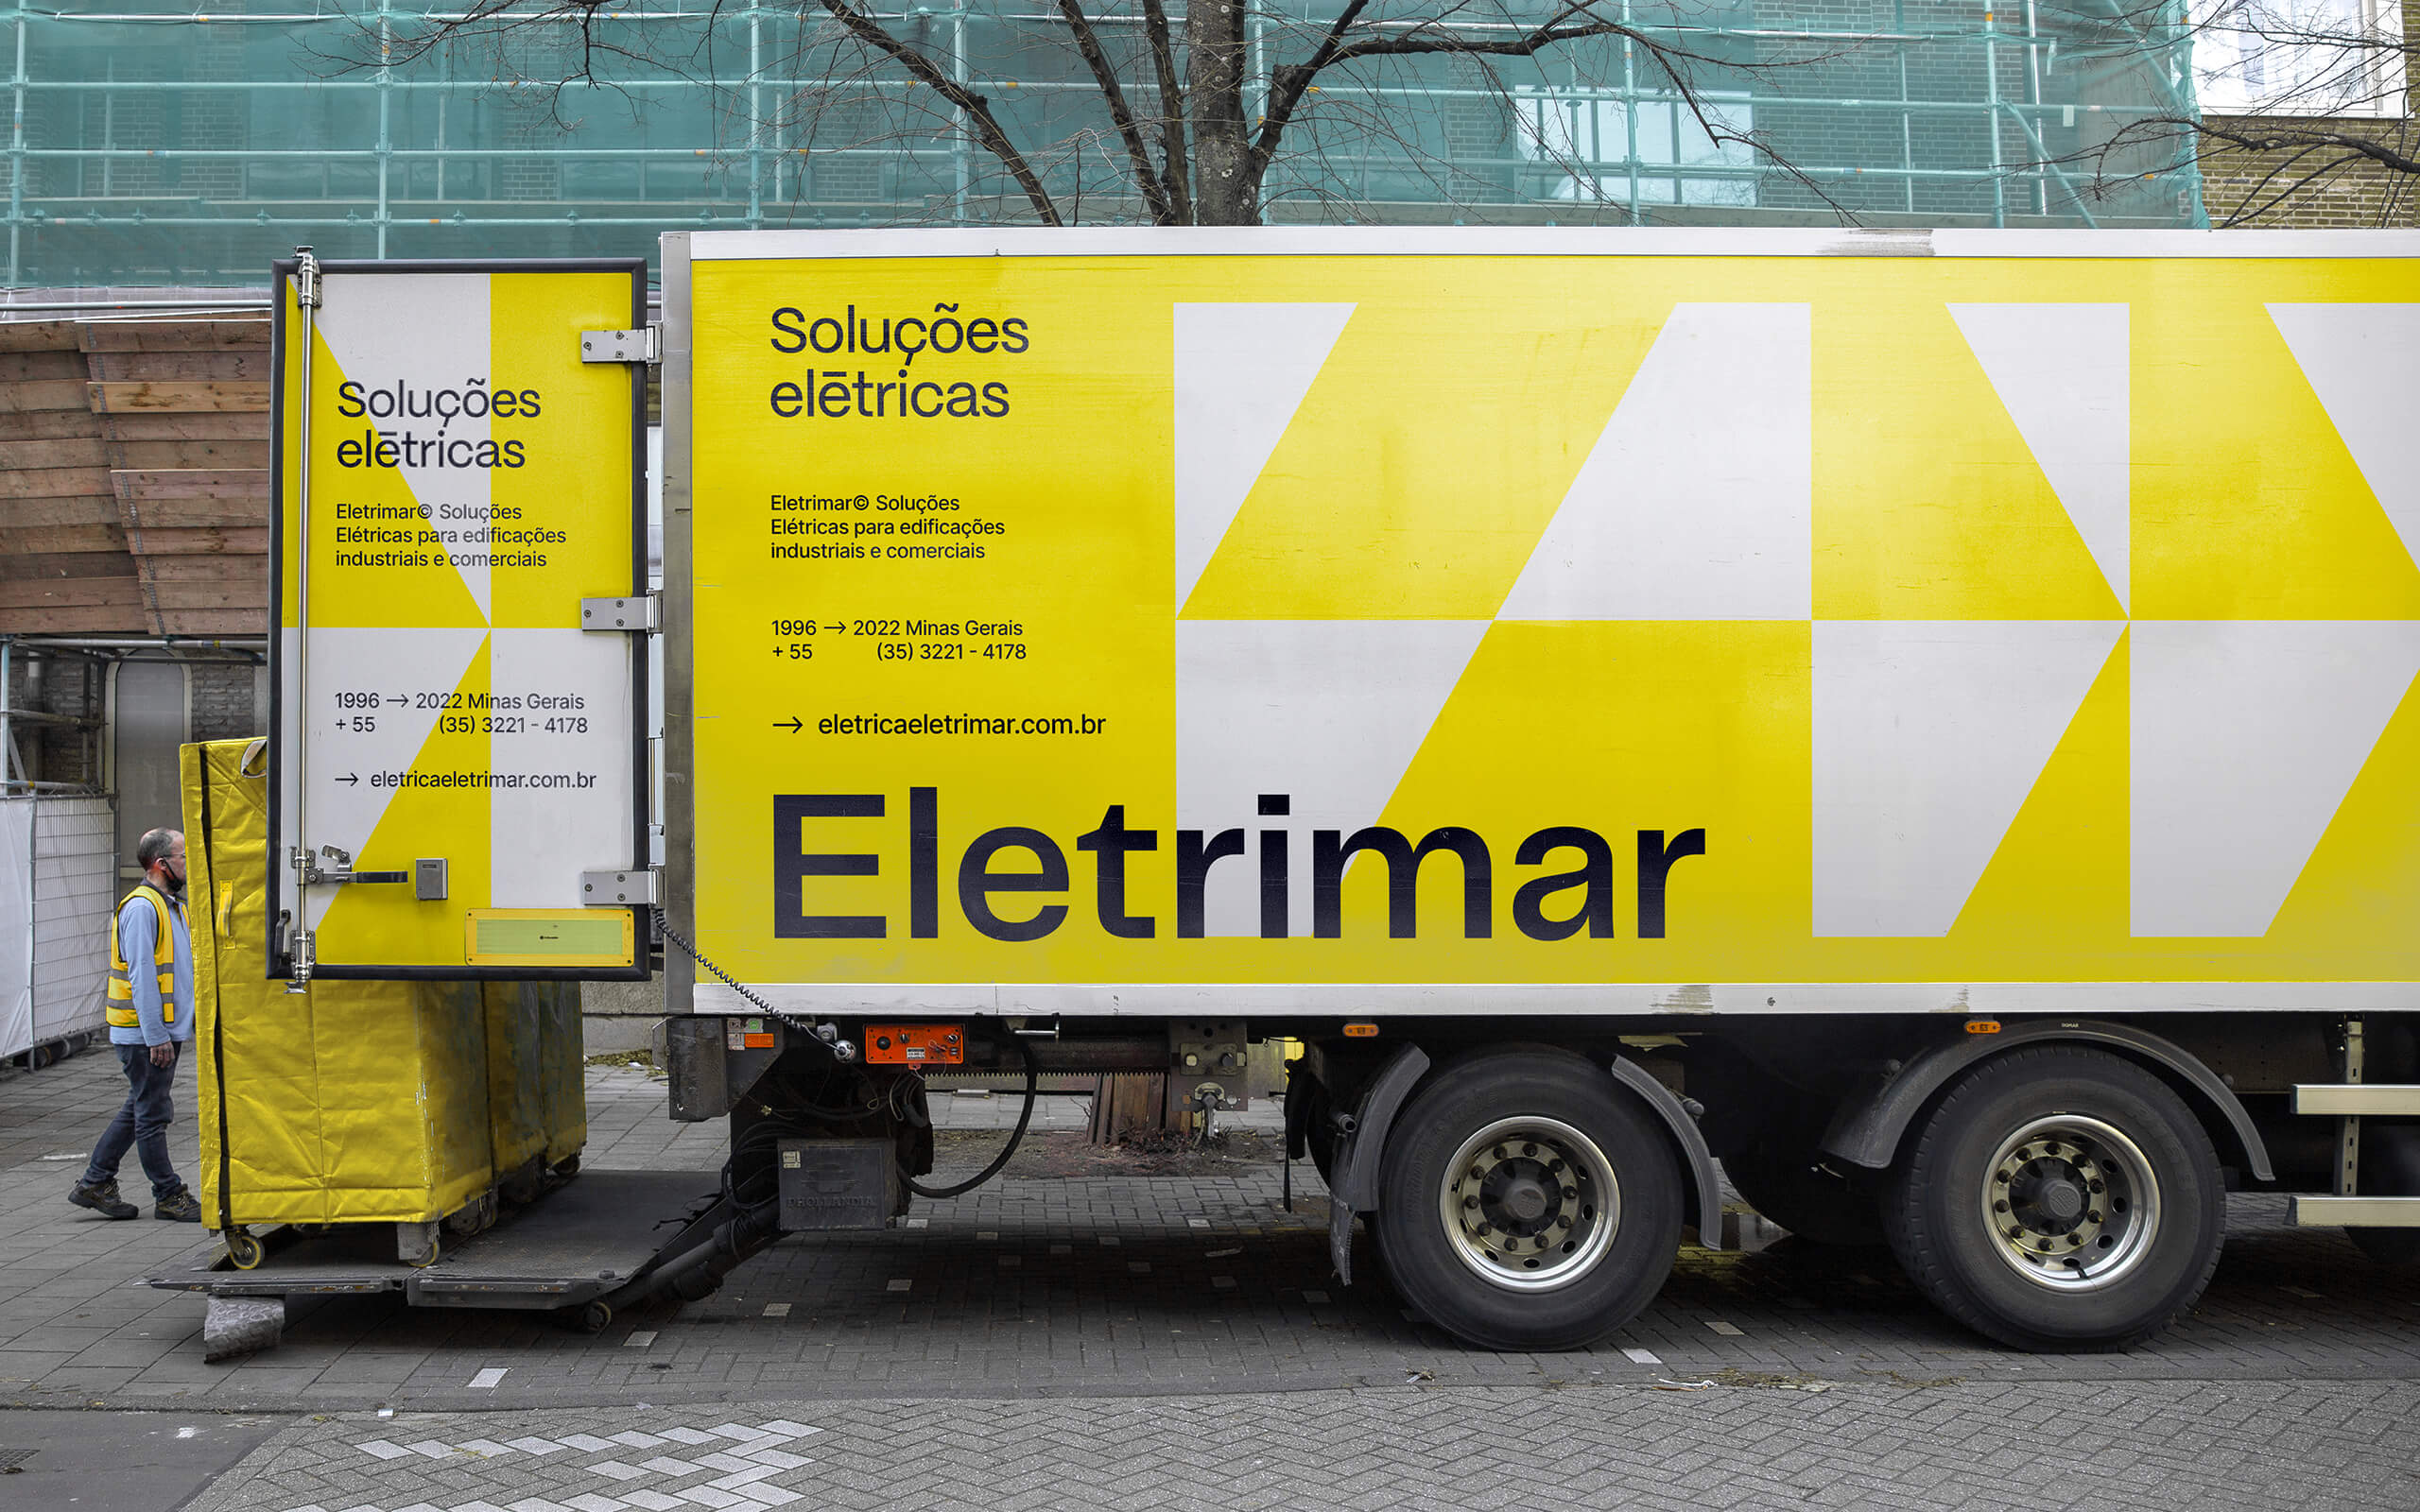 Branding for Eletrimar Electrical Services Company Designed Estúdio Kuumba